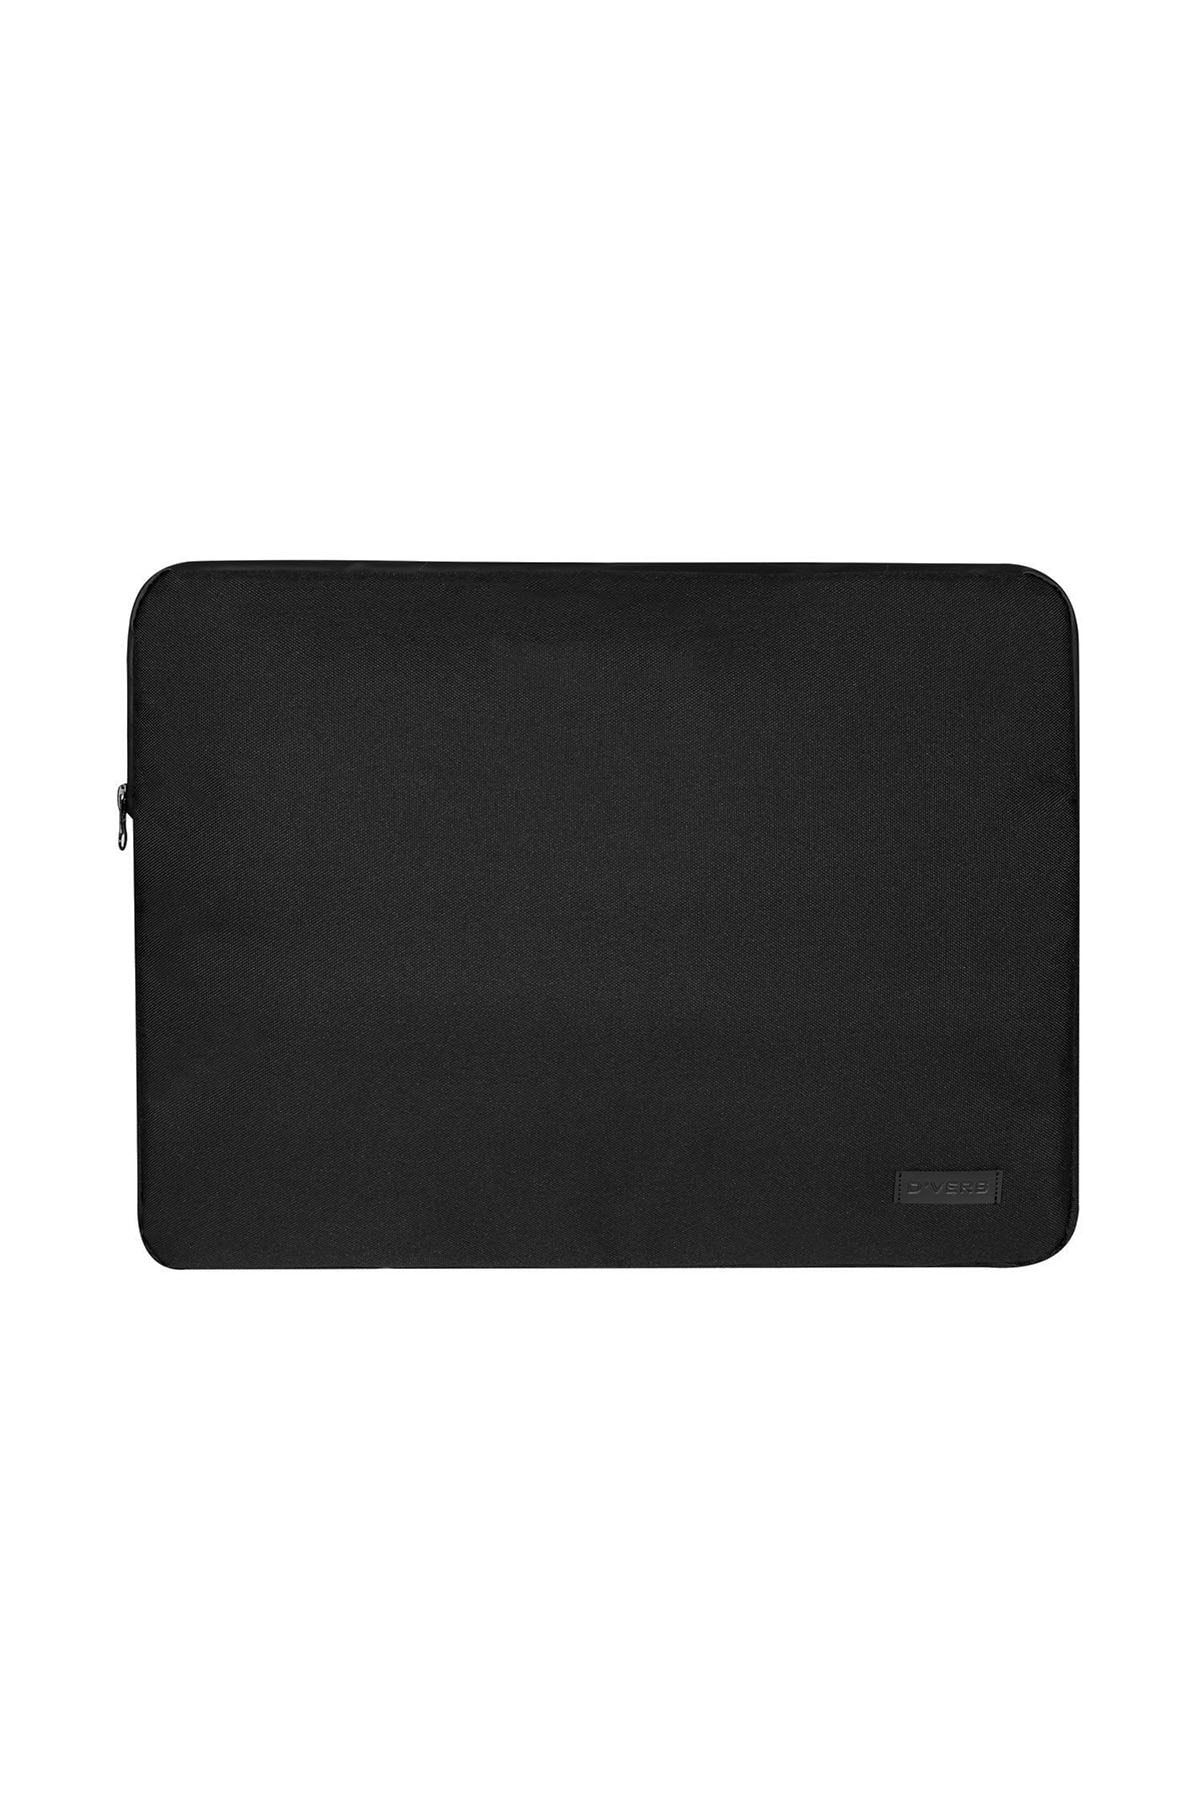 D'VERS Siyah Su Geçirmez Fermuar Detaylı Unisex 15-15,6 Inç Uyumlu Macbook Kılıf Notebook Laptop Çantası